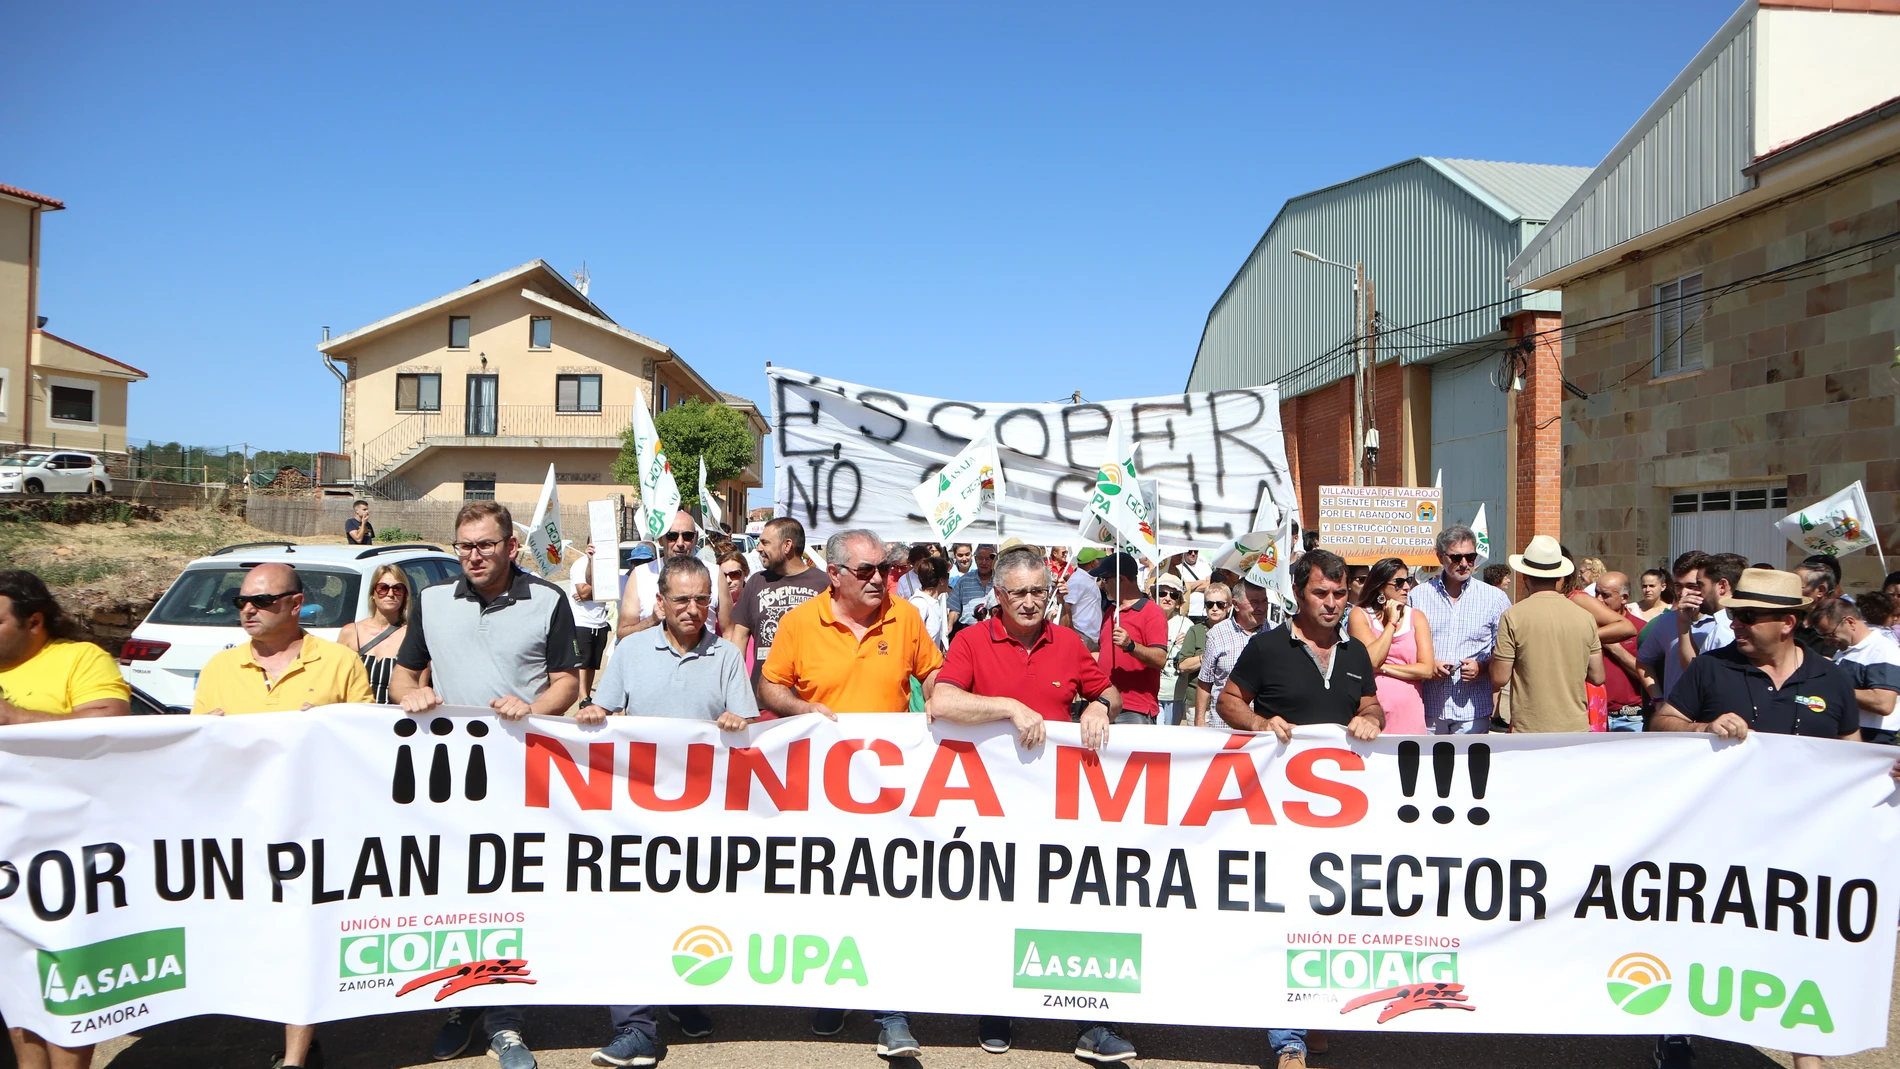 Asaja, COAG y UPA de Zamora celebran una concentración en Tábara (Zamora